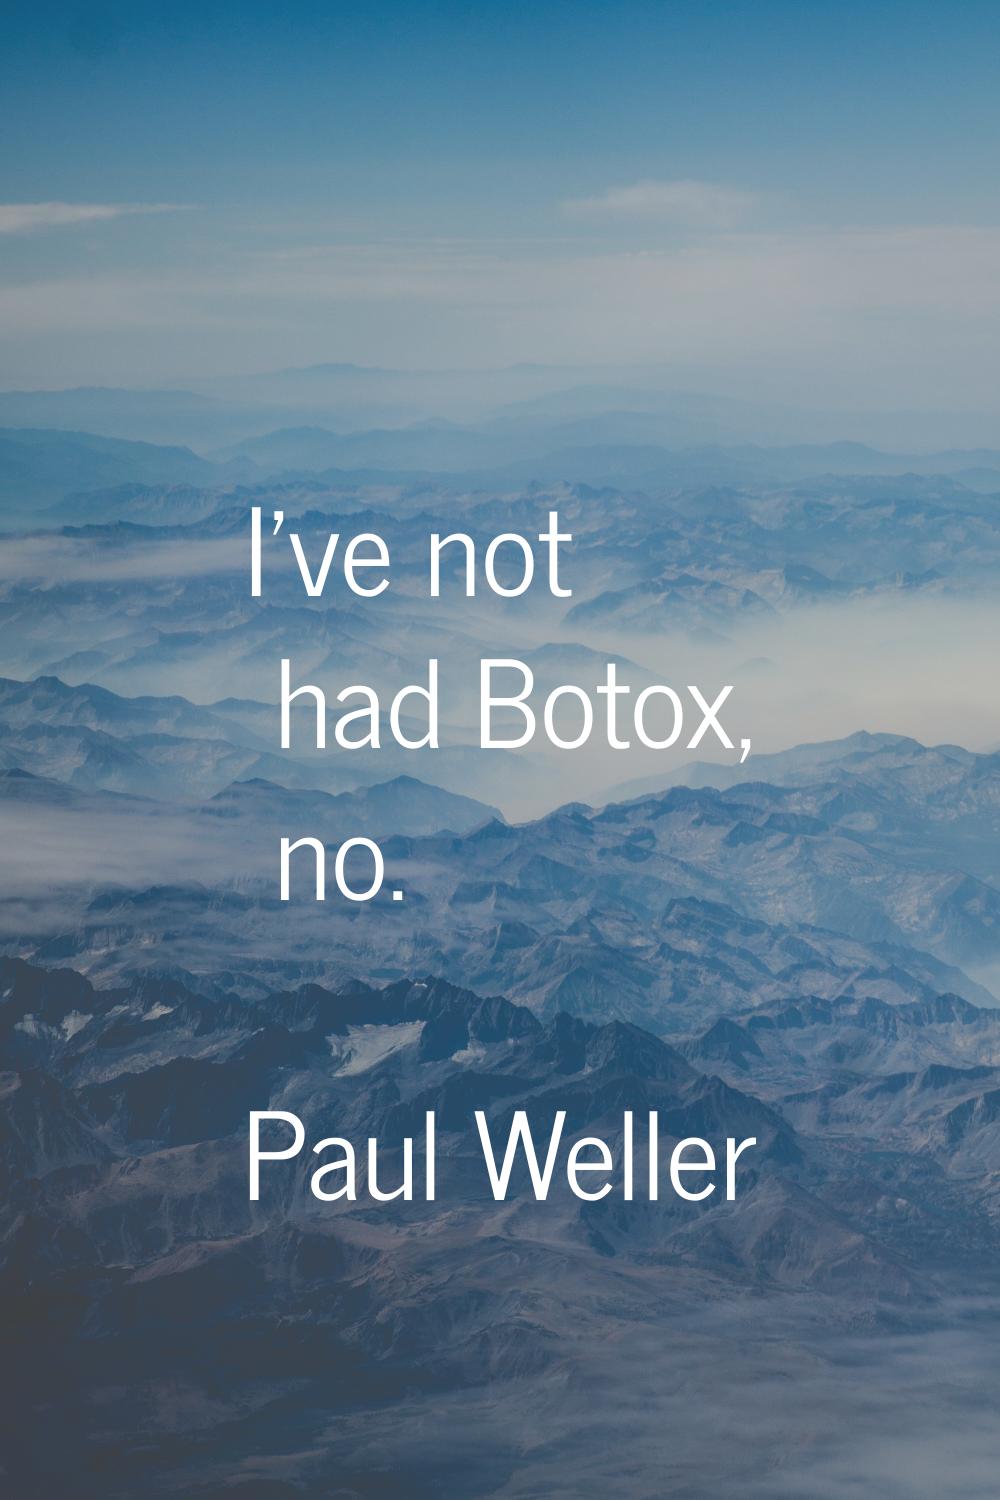 I've not had Botox, no.